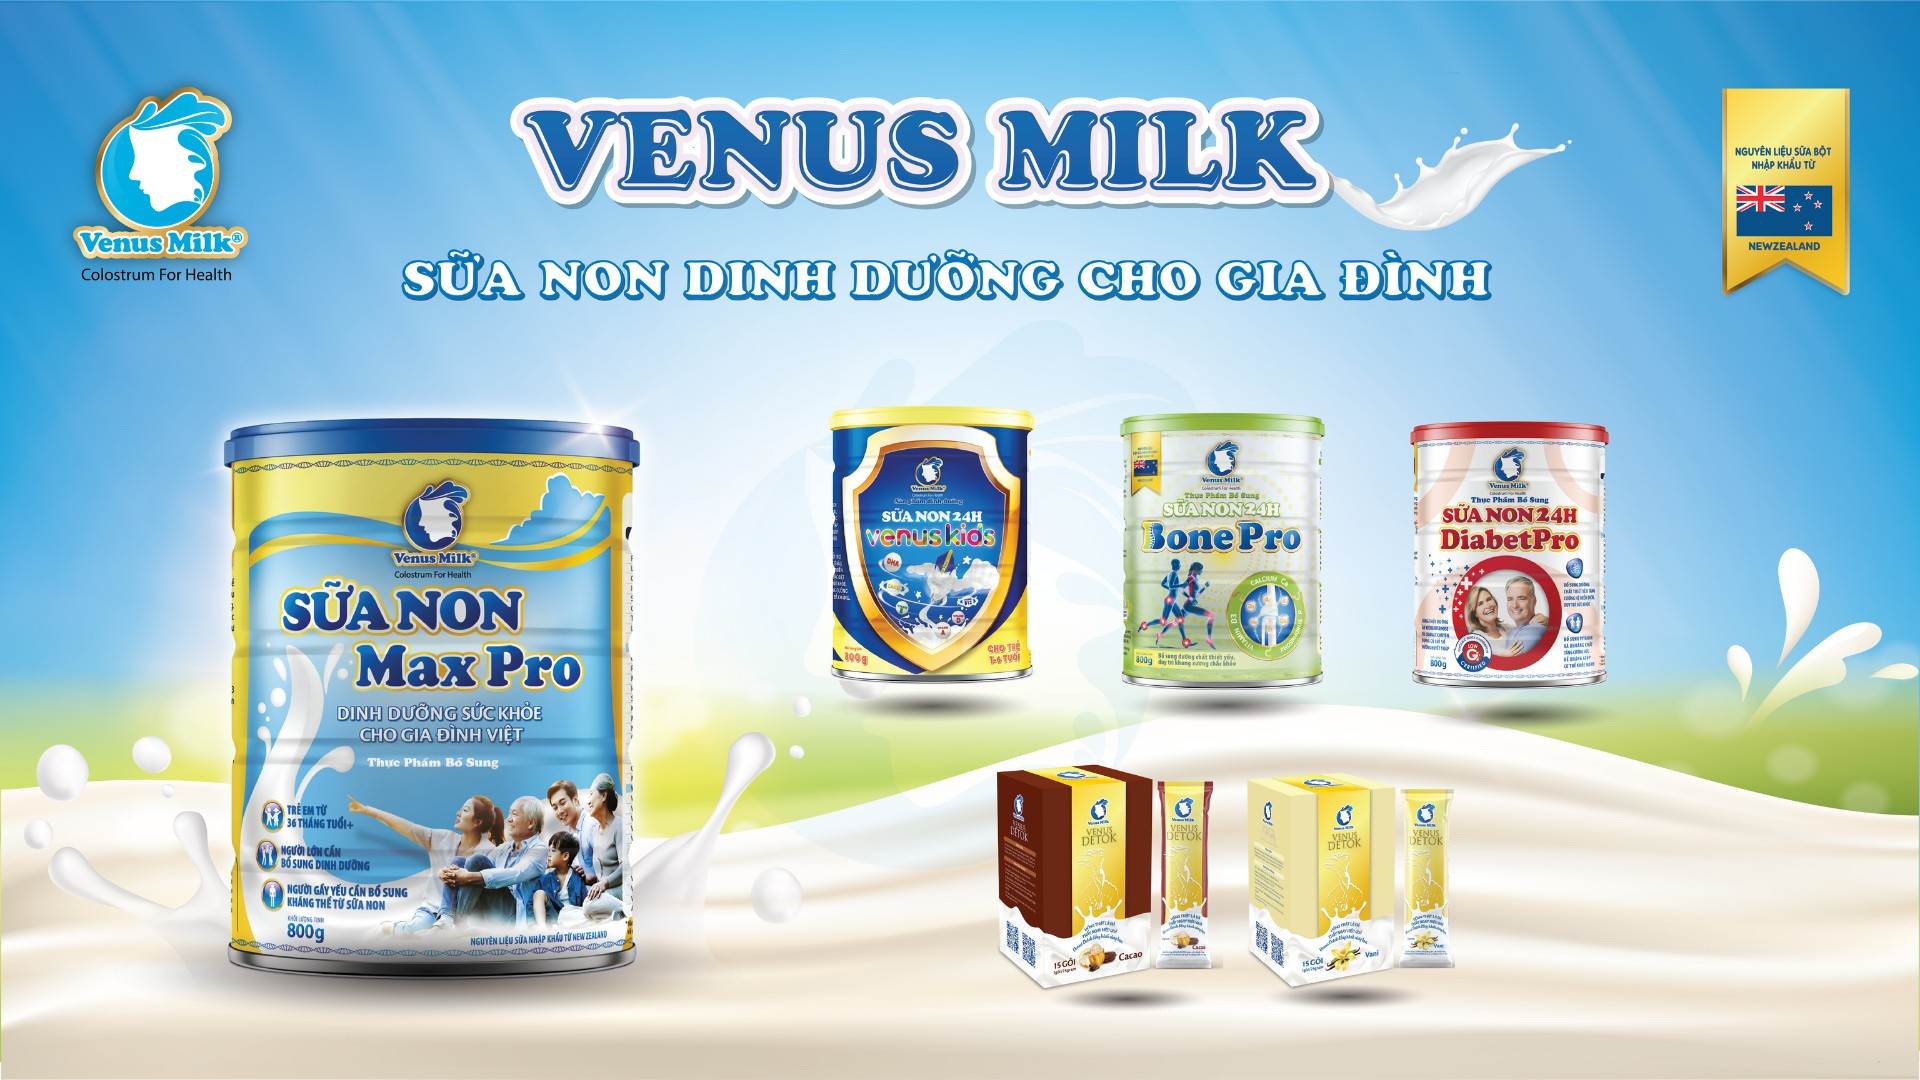 Venus Milk THUMYOUTUBE - Venus Milk